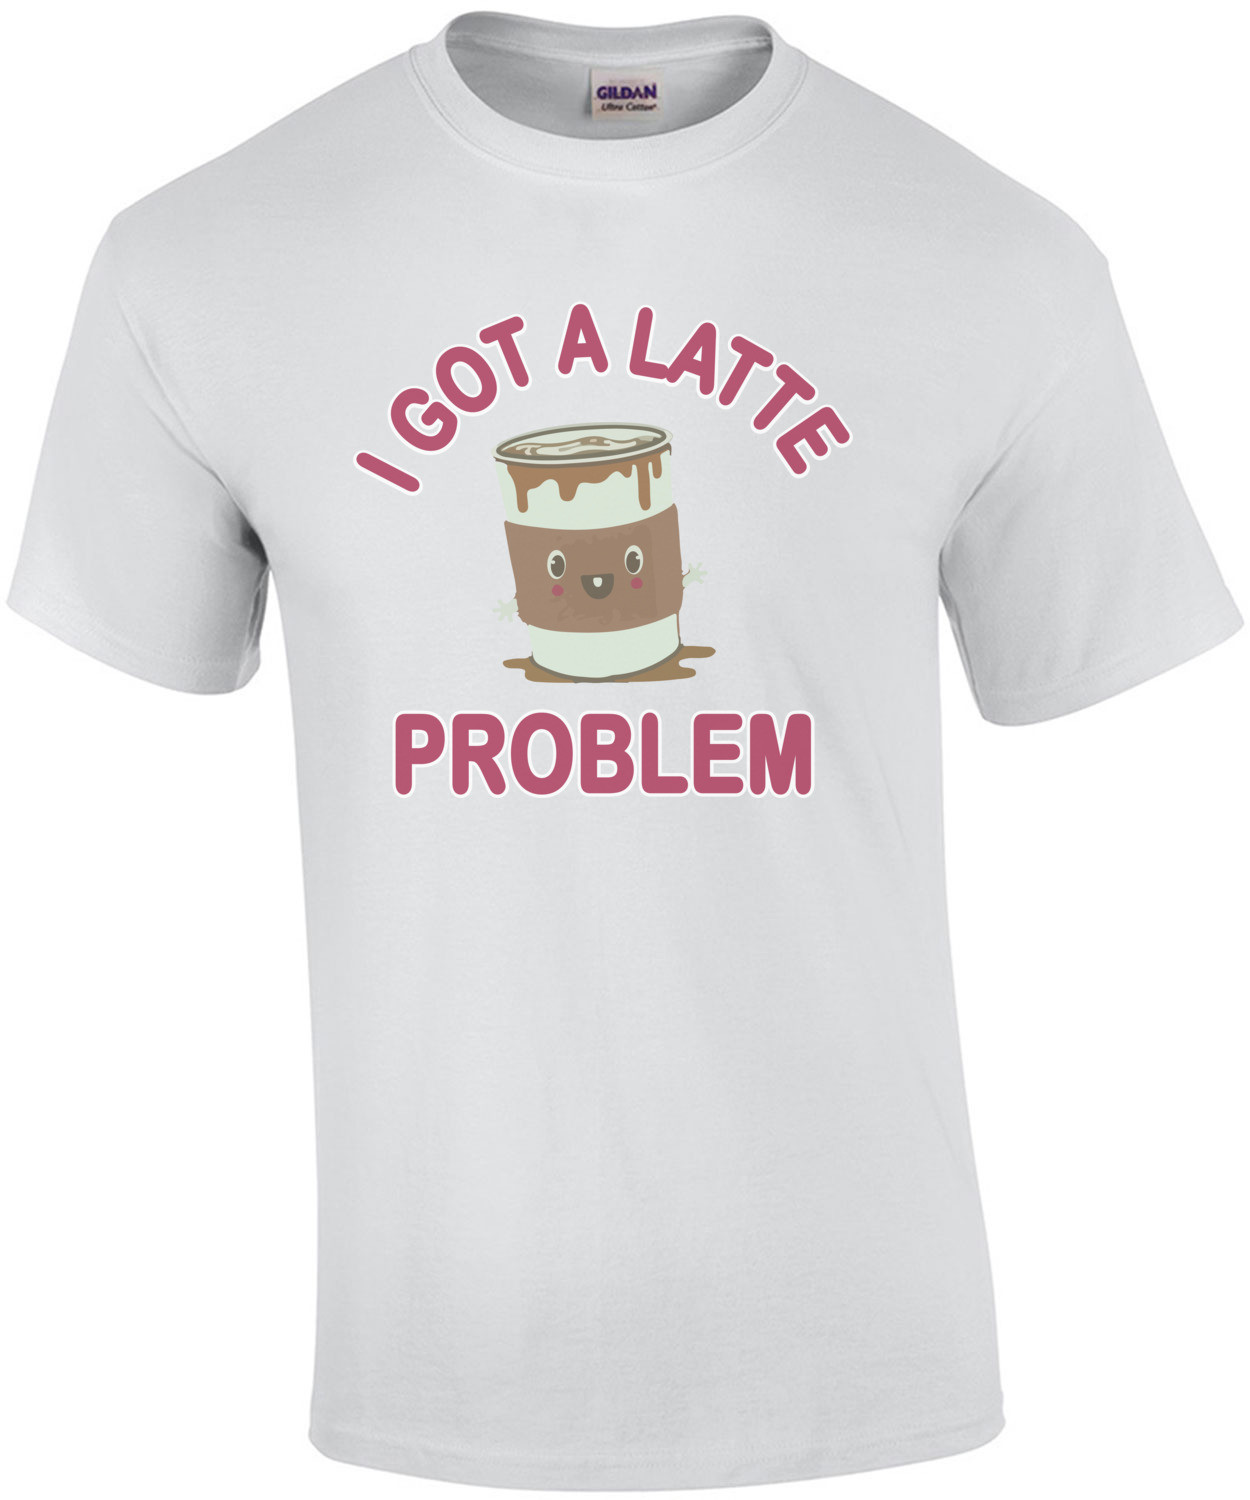 I Got A Latte Problem - Funny Cute T-Shirt